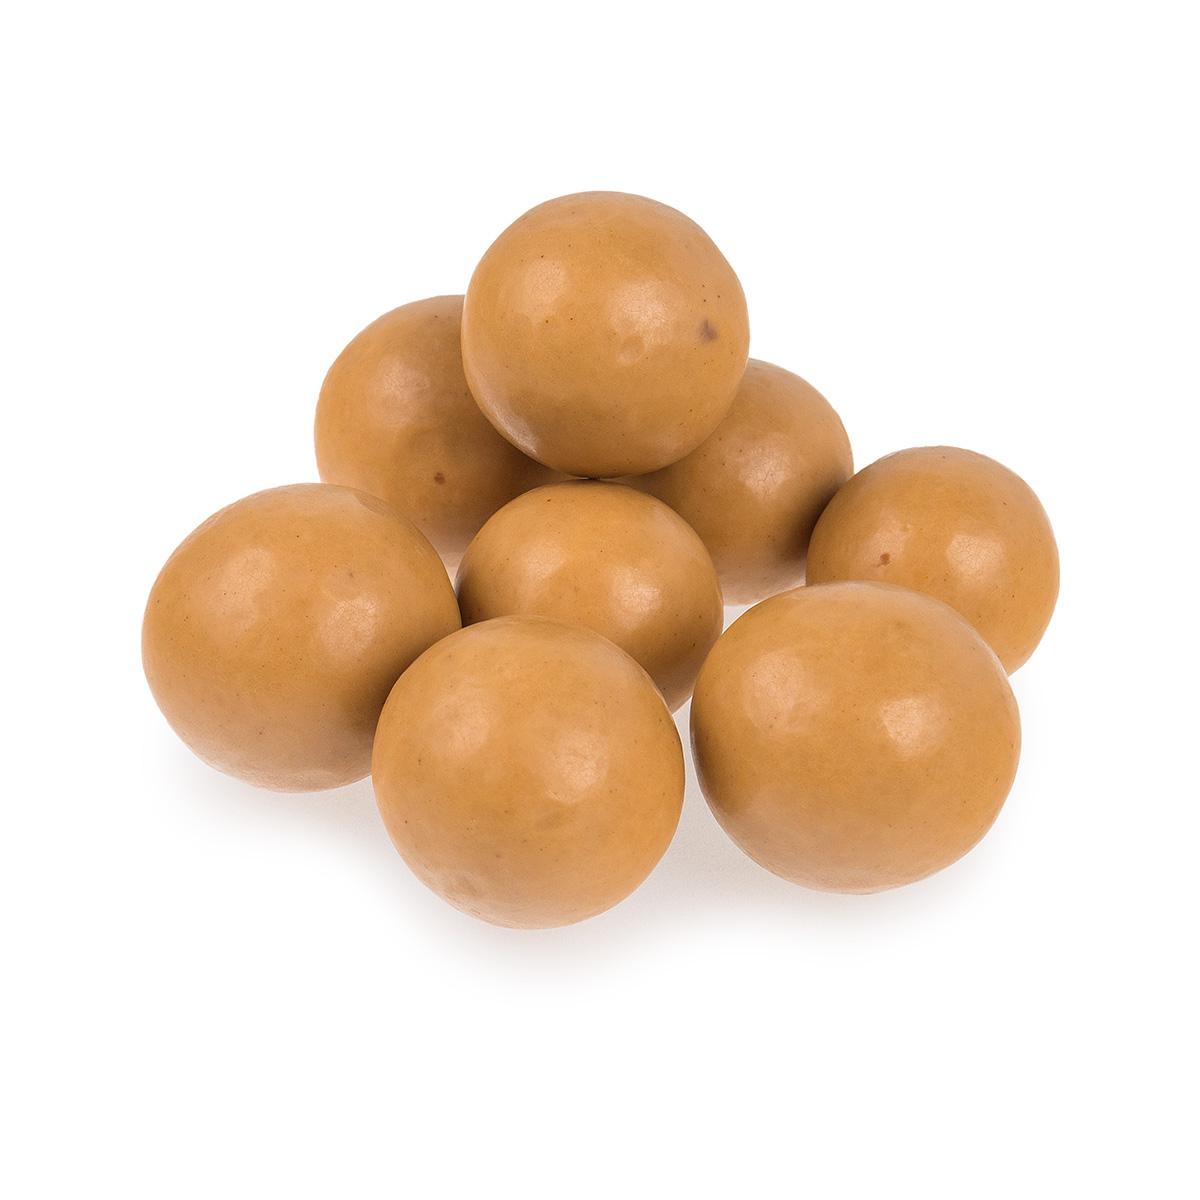  Milk Chocolate Peanut Butter Malt Balls Candy - 1 Lb.